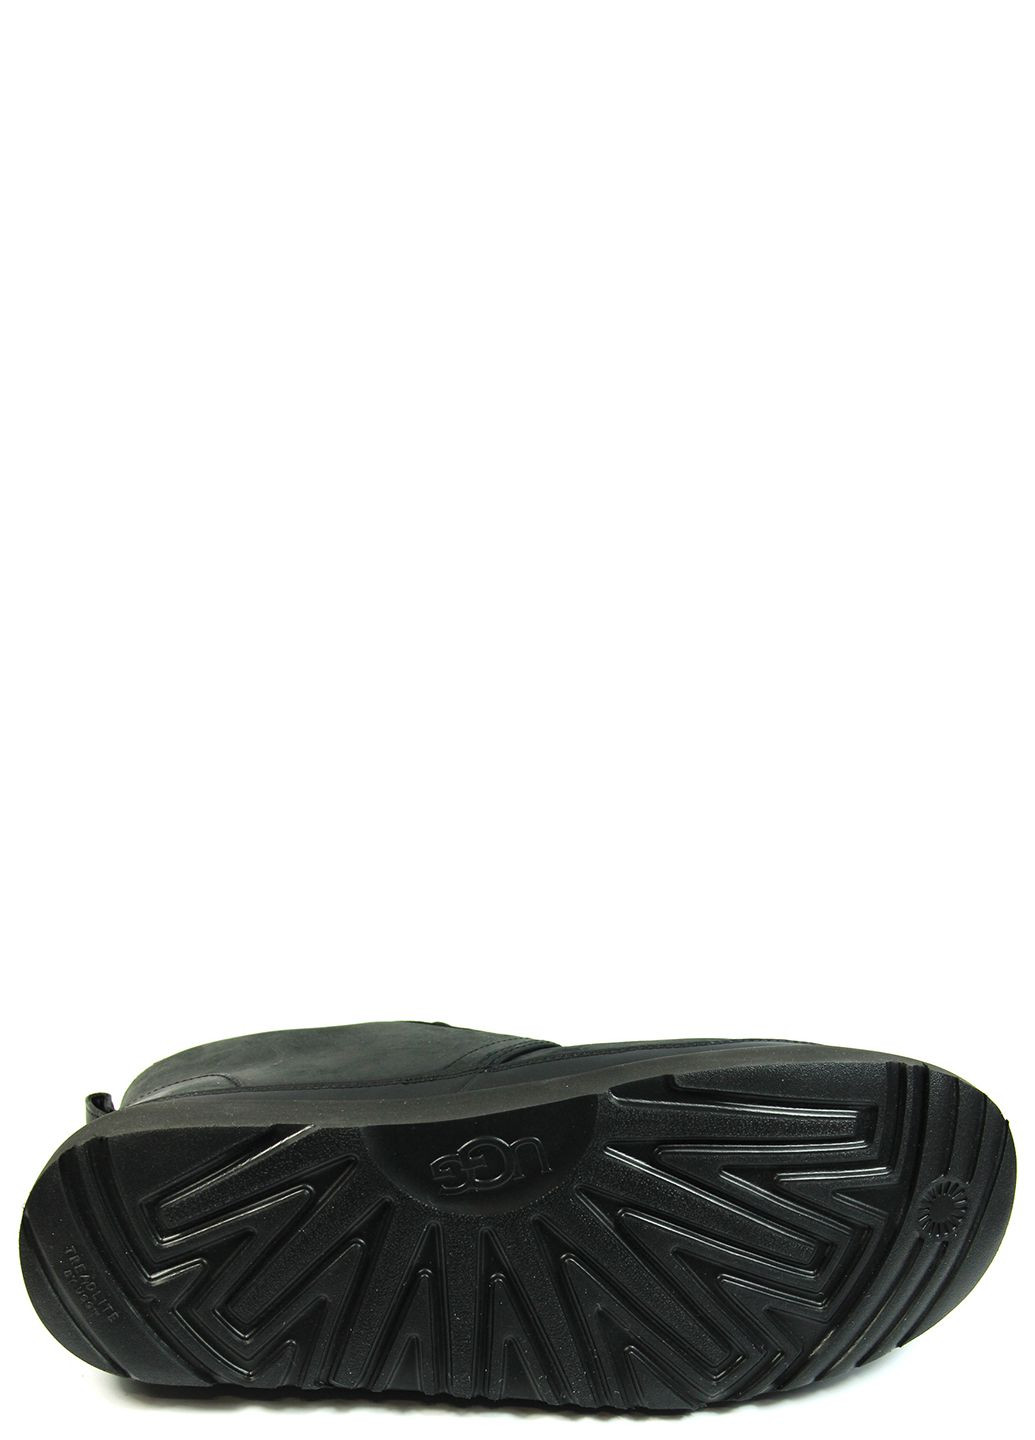 Черные зимние мужские ботинки neumel weather ii 1120851 UGG